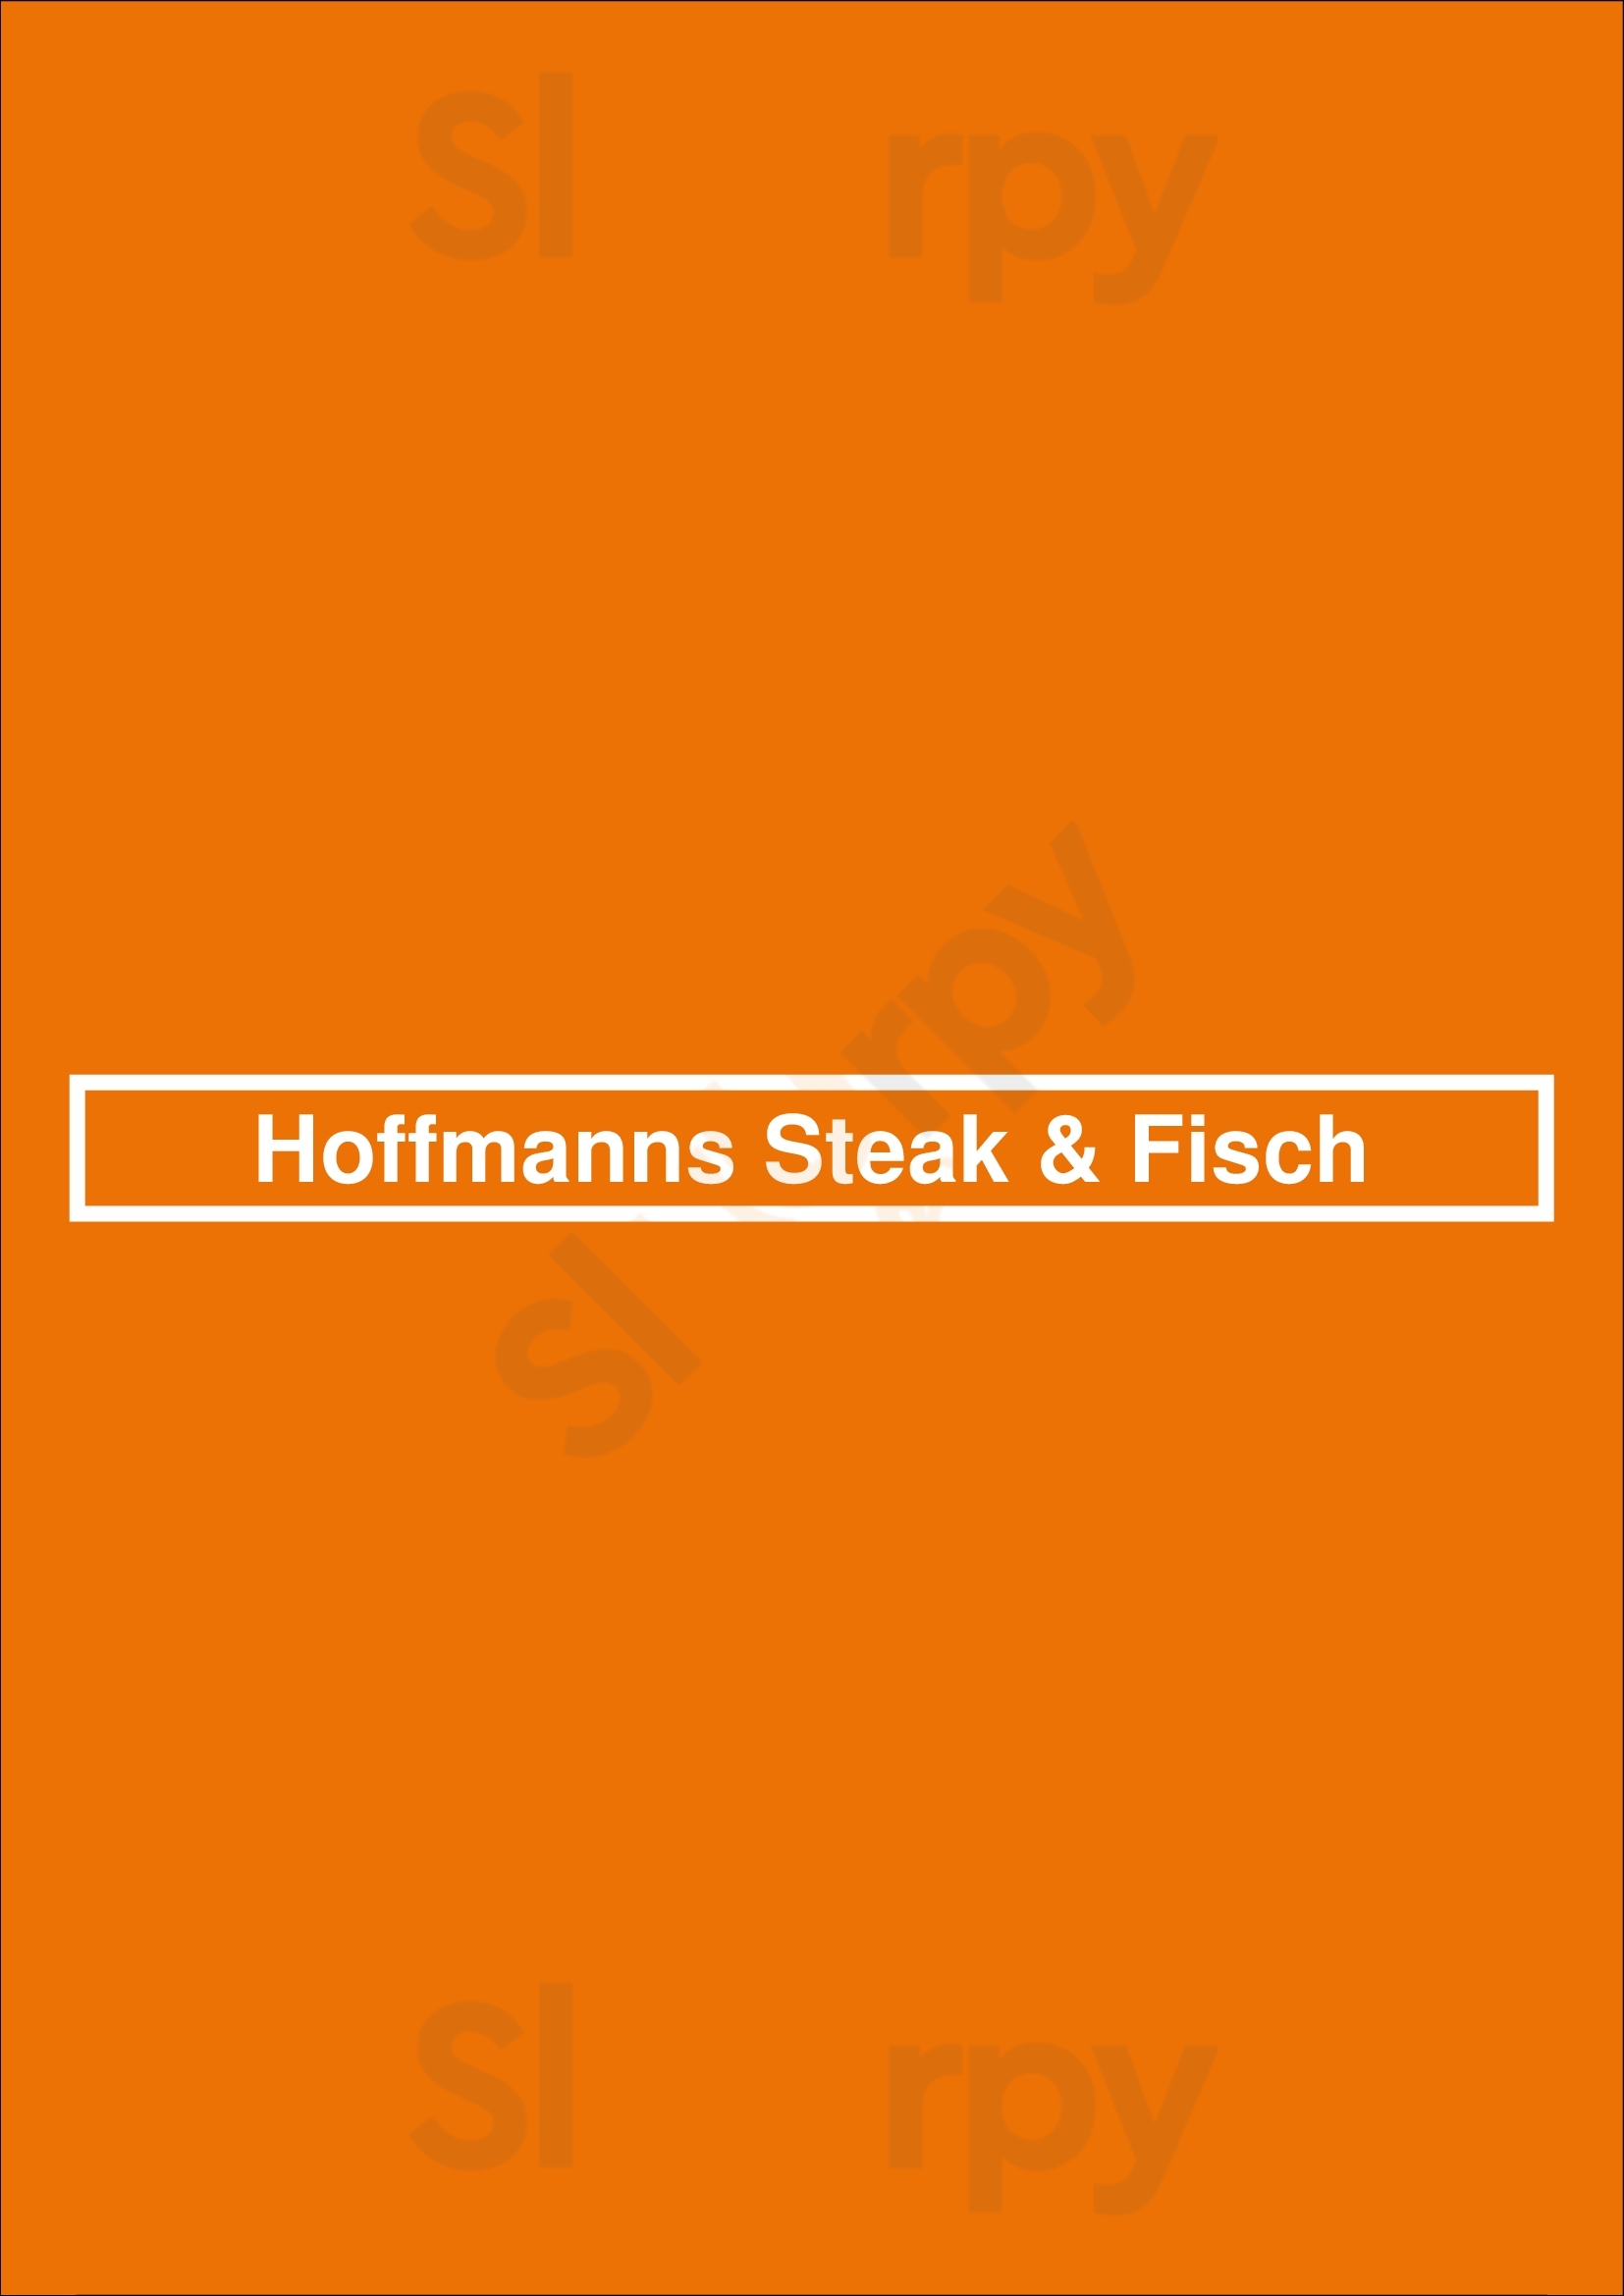 Hoffmanns Steak & Fisch Bamberg Menu - 1